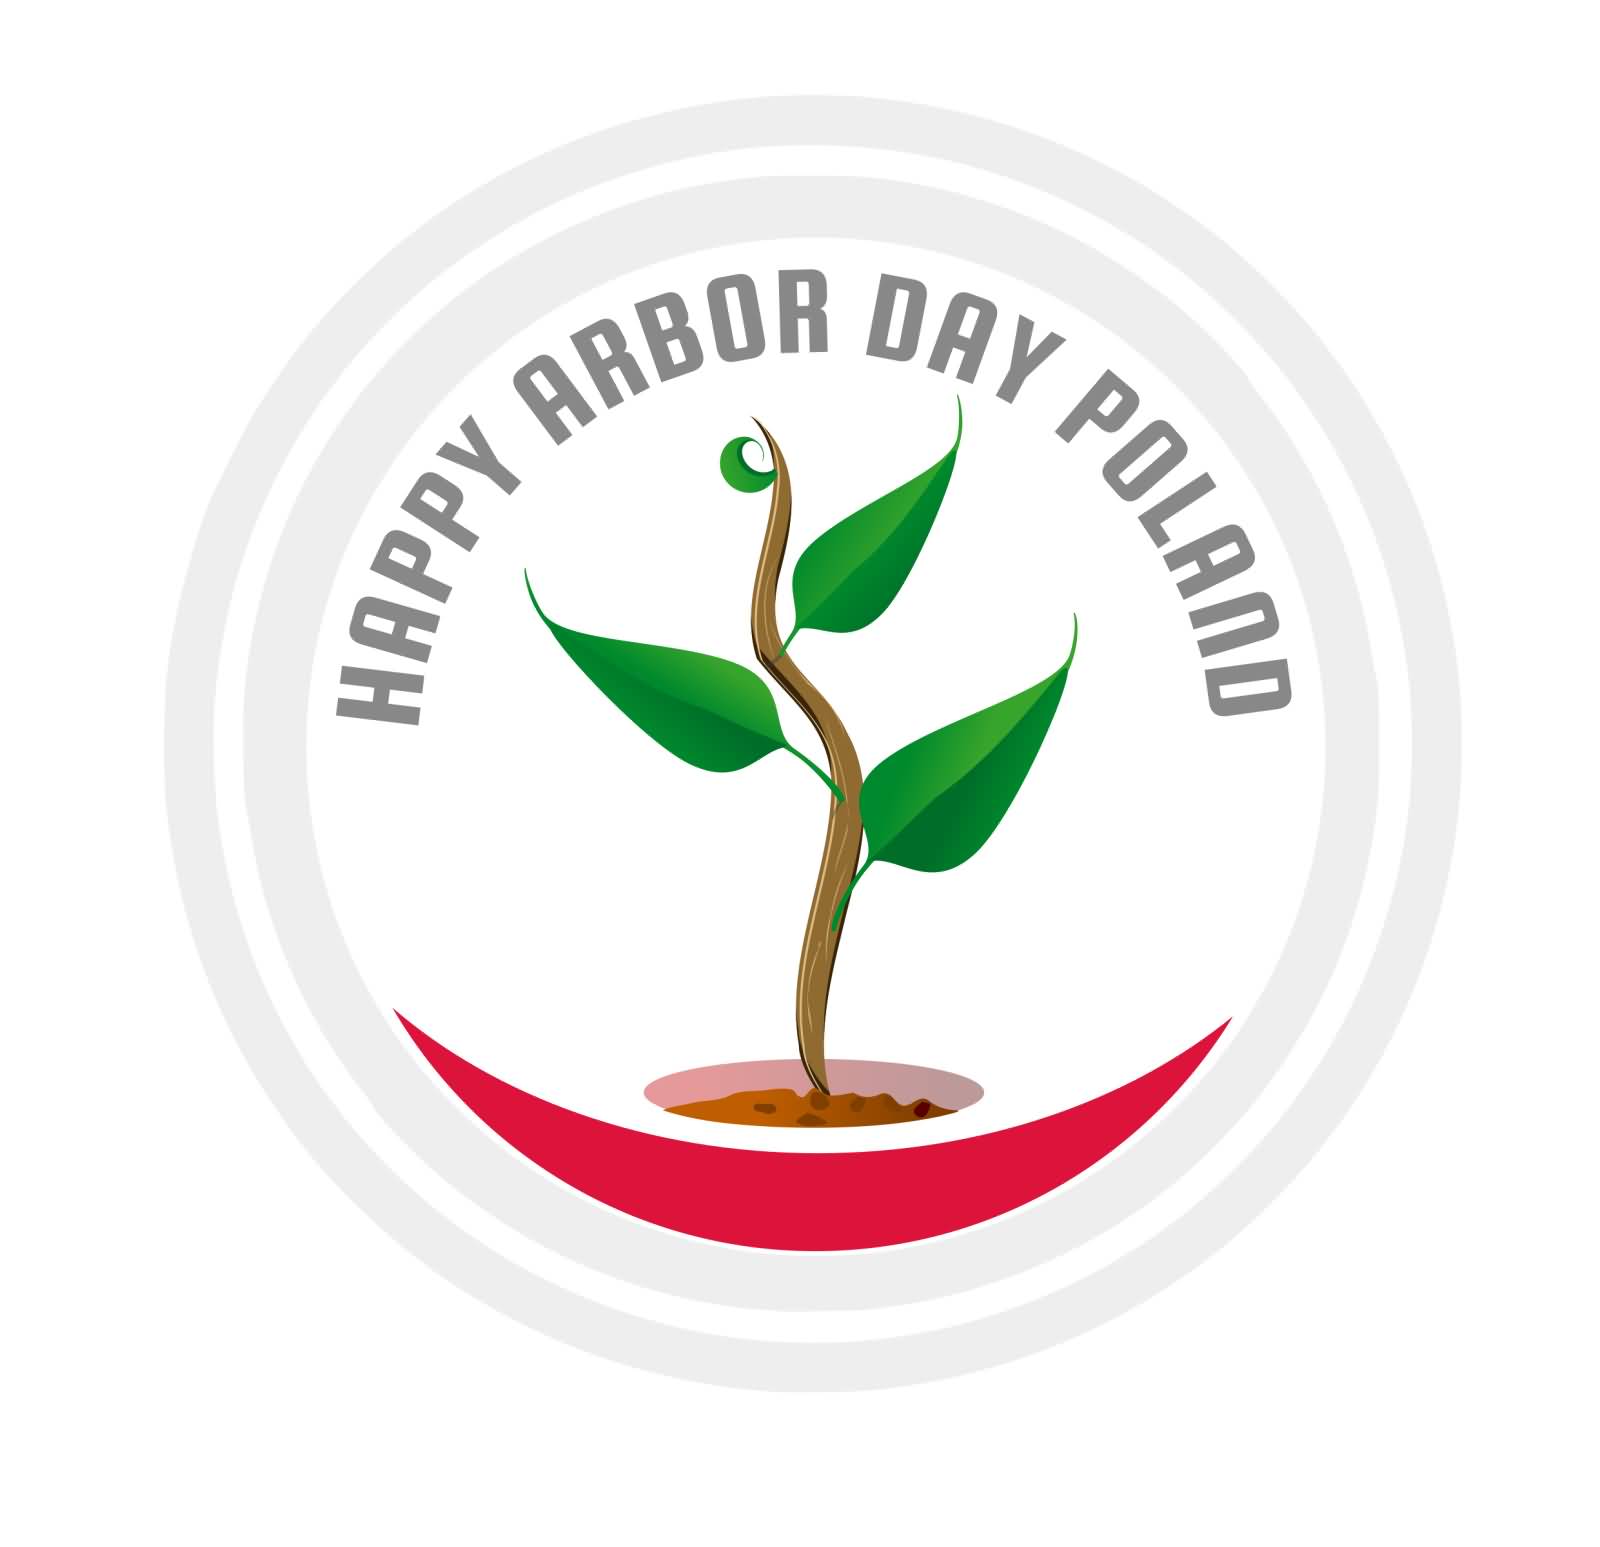 Happy Arbor Day Poland